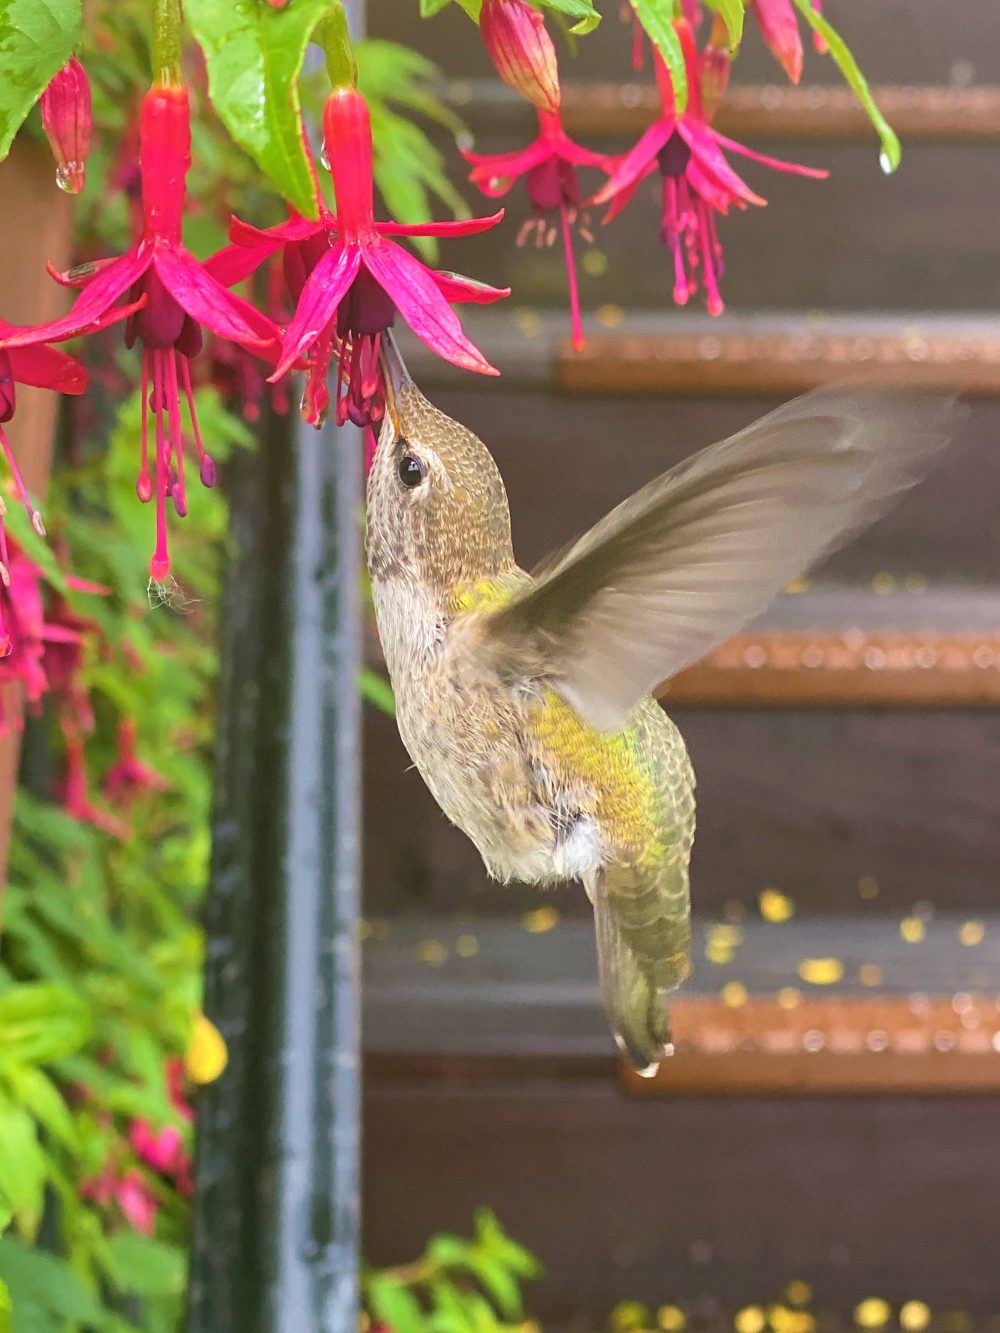 A lovely Anna's hummingbird (Calypte anna).